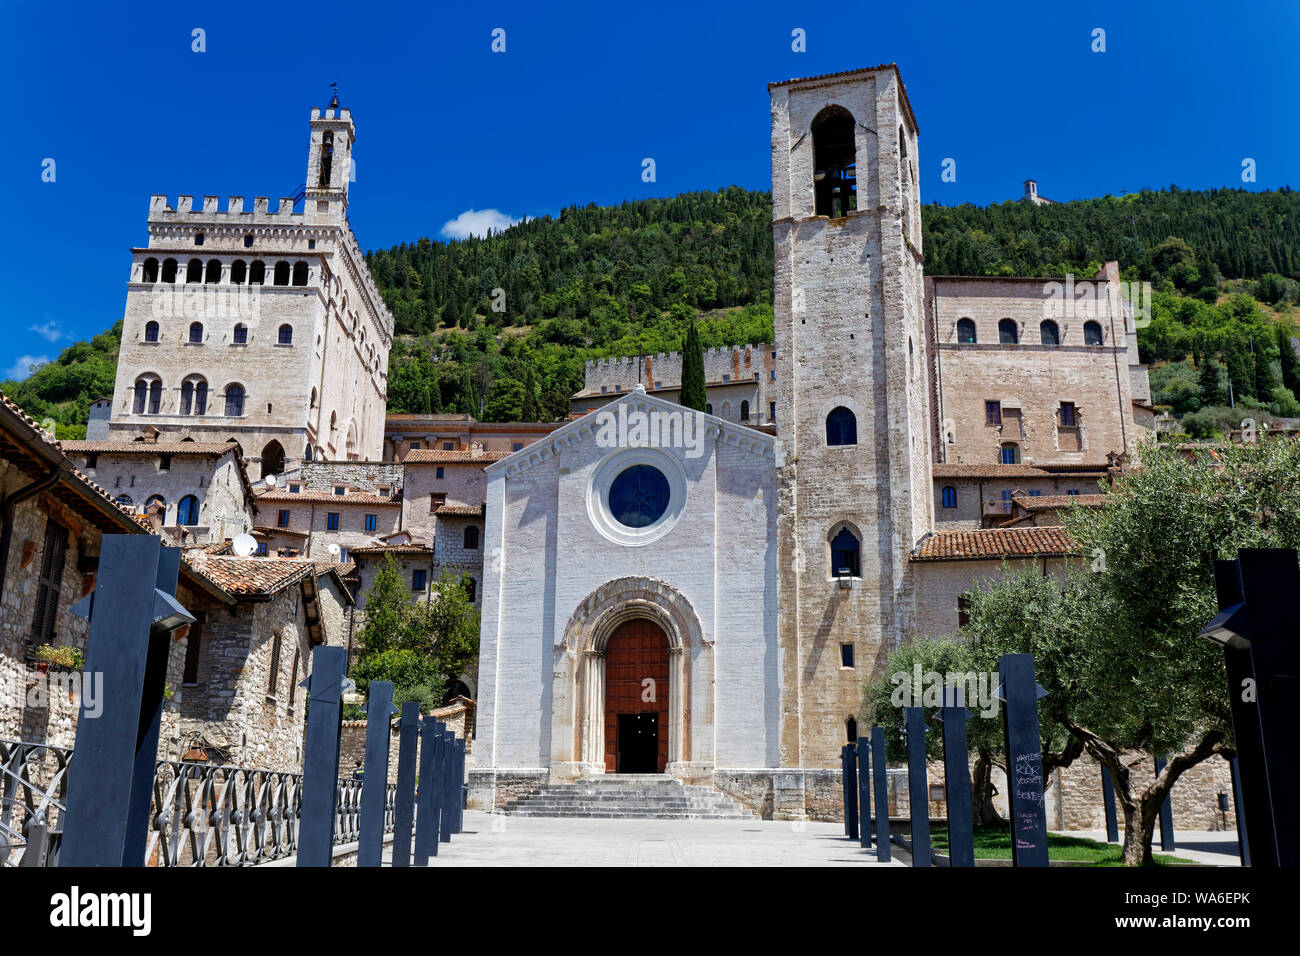 Chiesa di San Giovanni Battista, Gubbio, Umbria, Italy Stock Photo